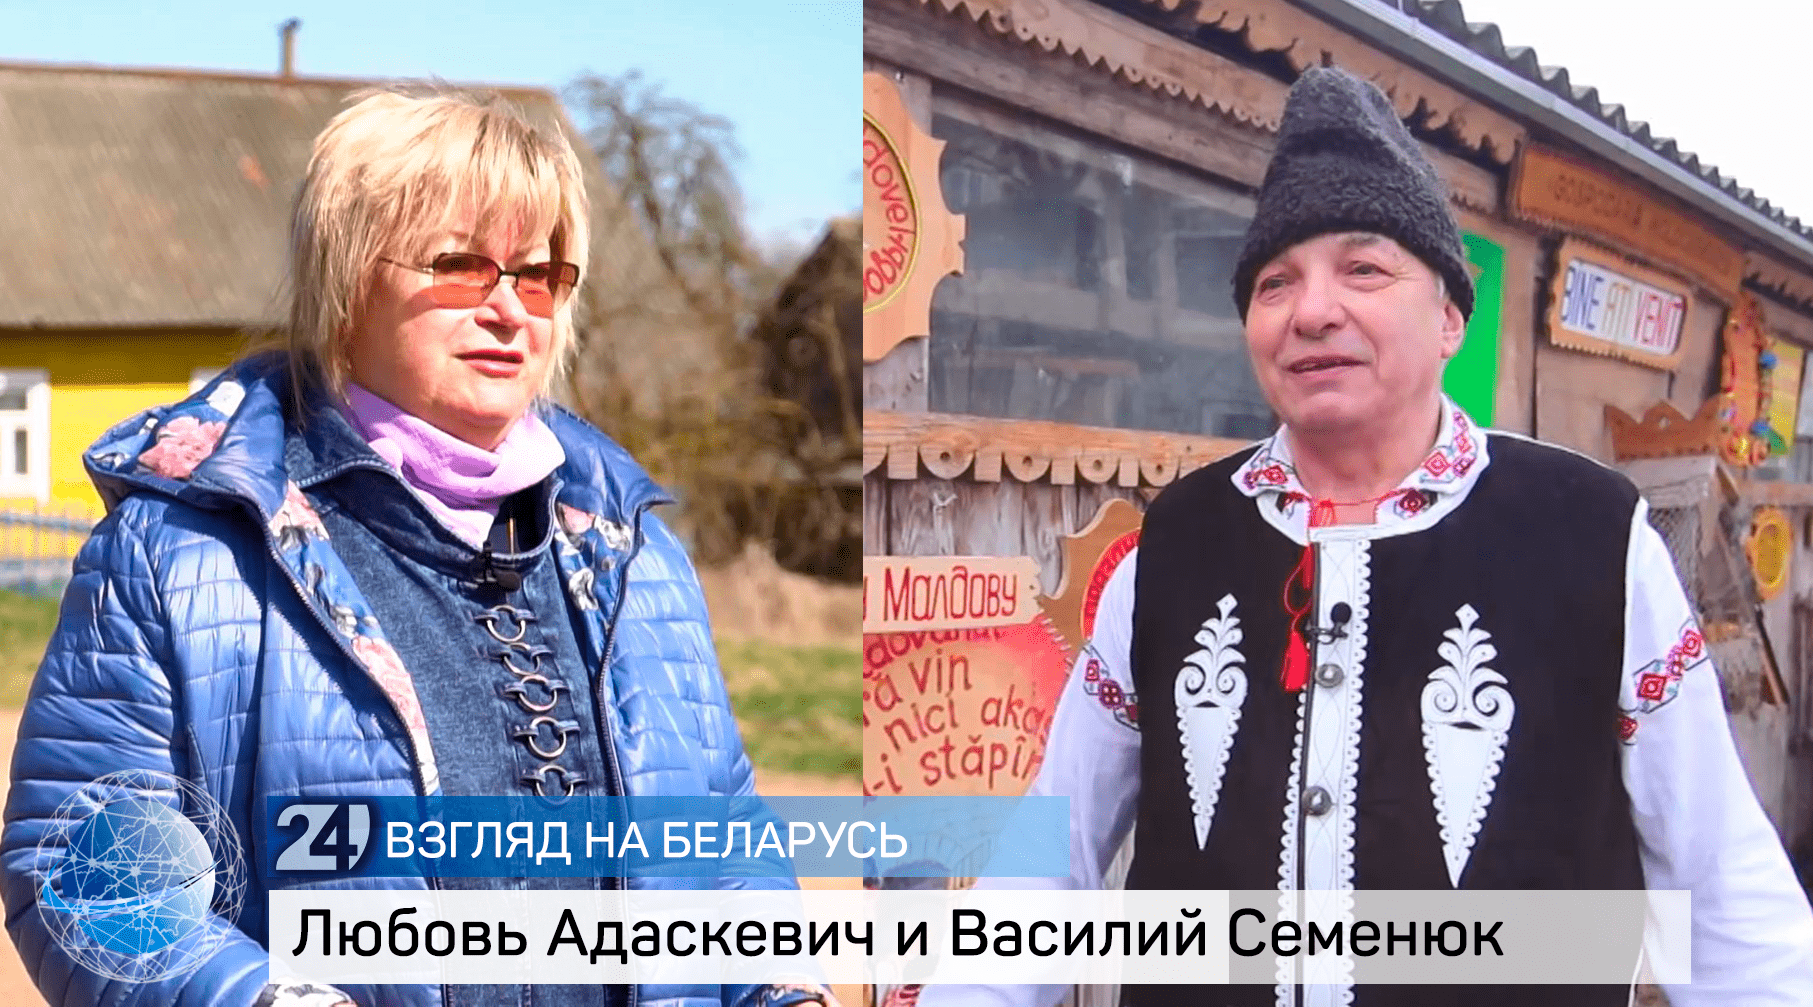 О жизни в белорусской деревне, малой родине и ностальгии